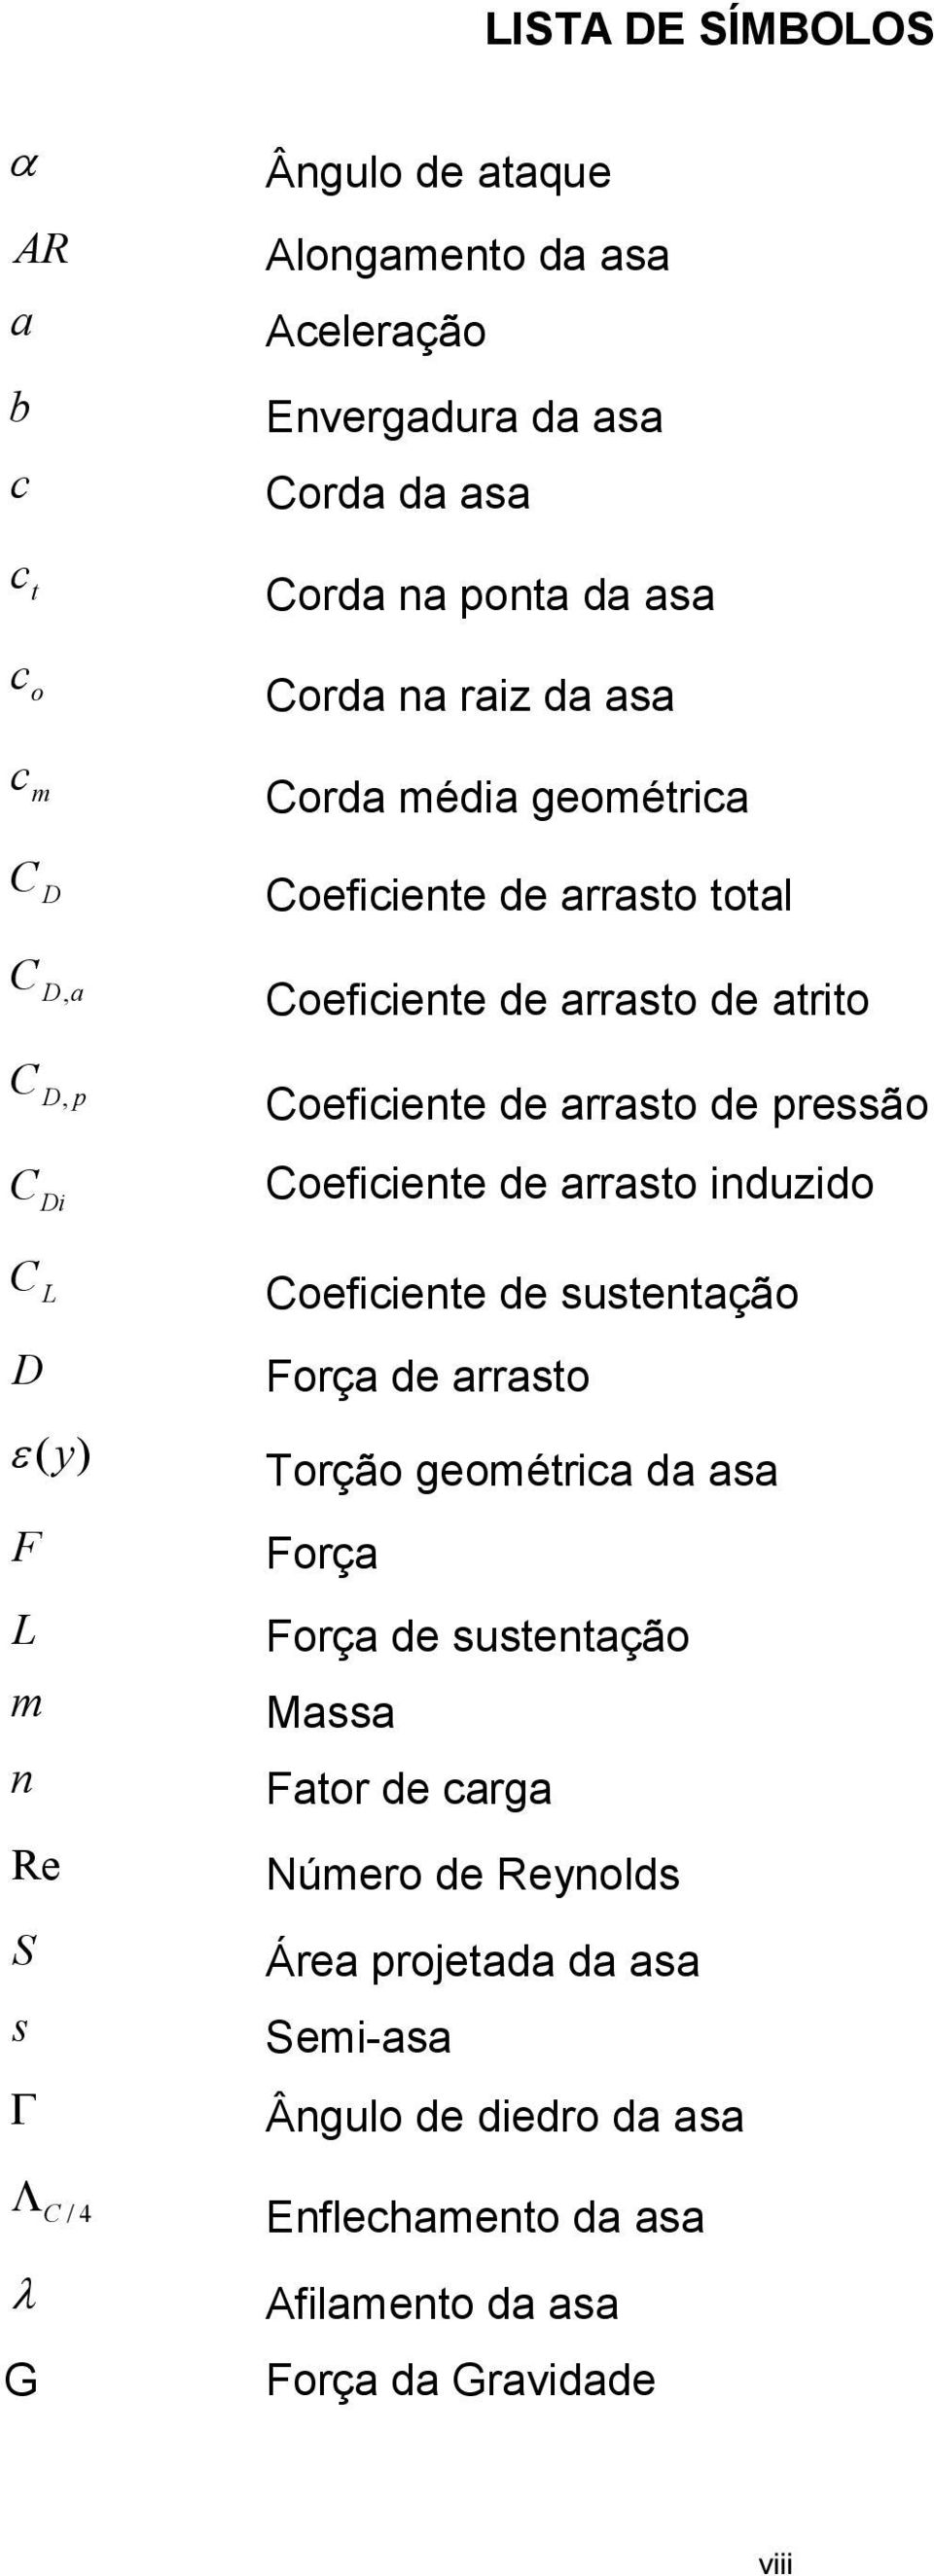 (y) F L m n Re S s Γ Λ C / 4 λ G Coeficiente de arrasto induzido Coeficiente de sustentação Força de arrasto Torção geométrica da asa Força Força de